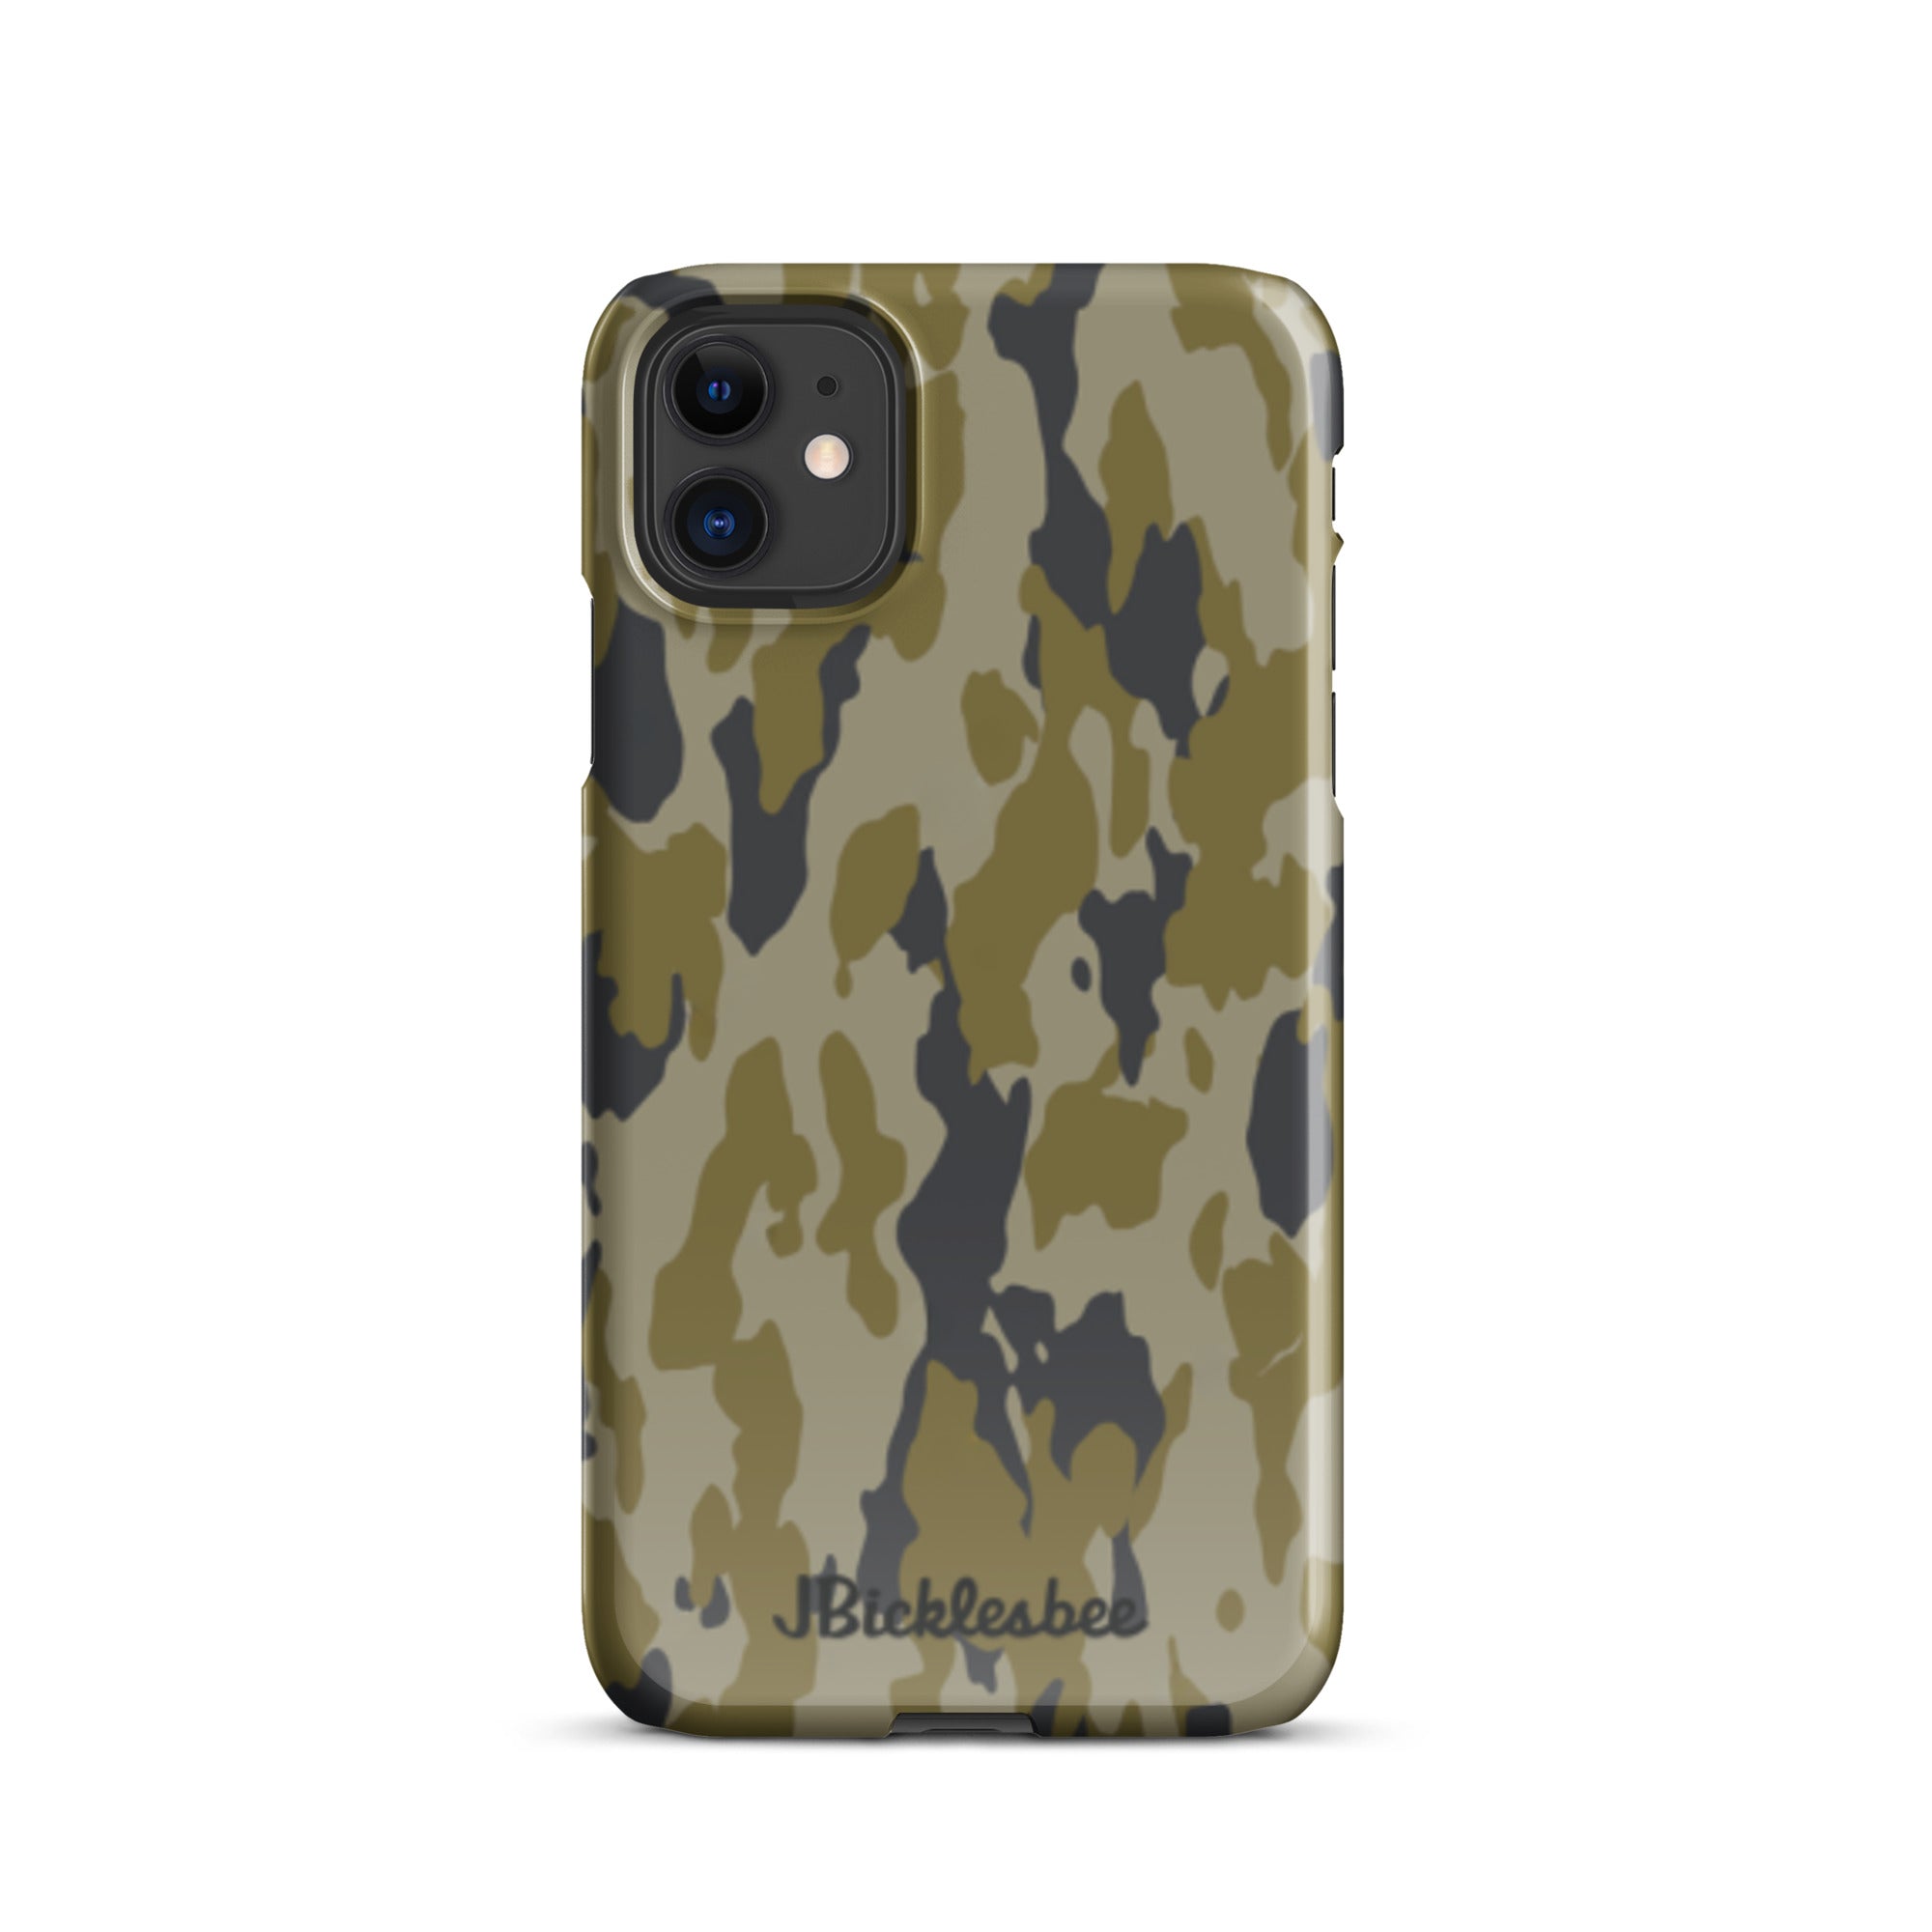 Retro Bark Camo iPhone Snap Case